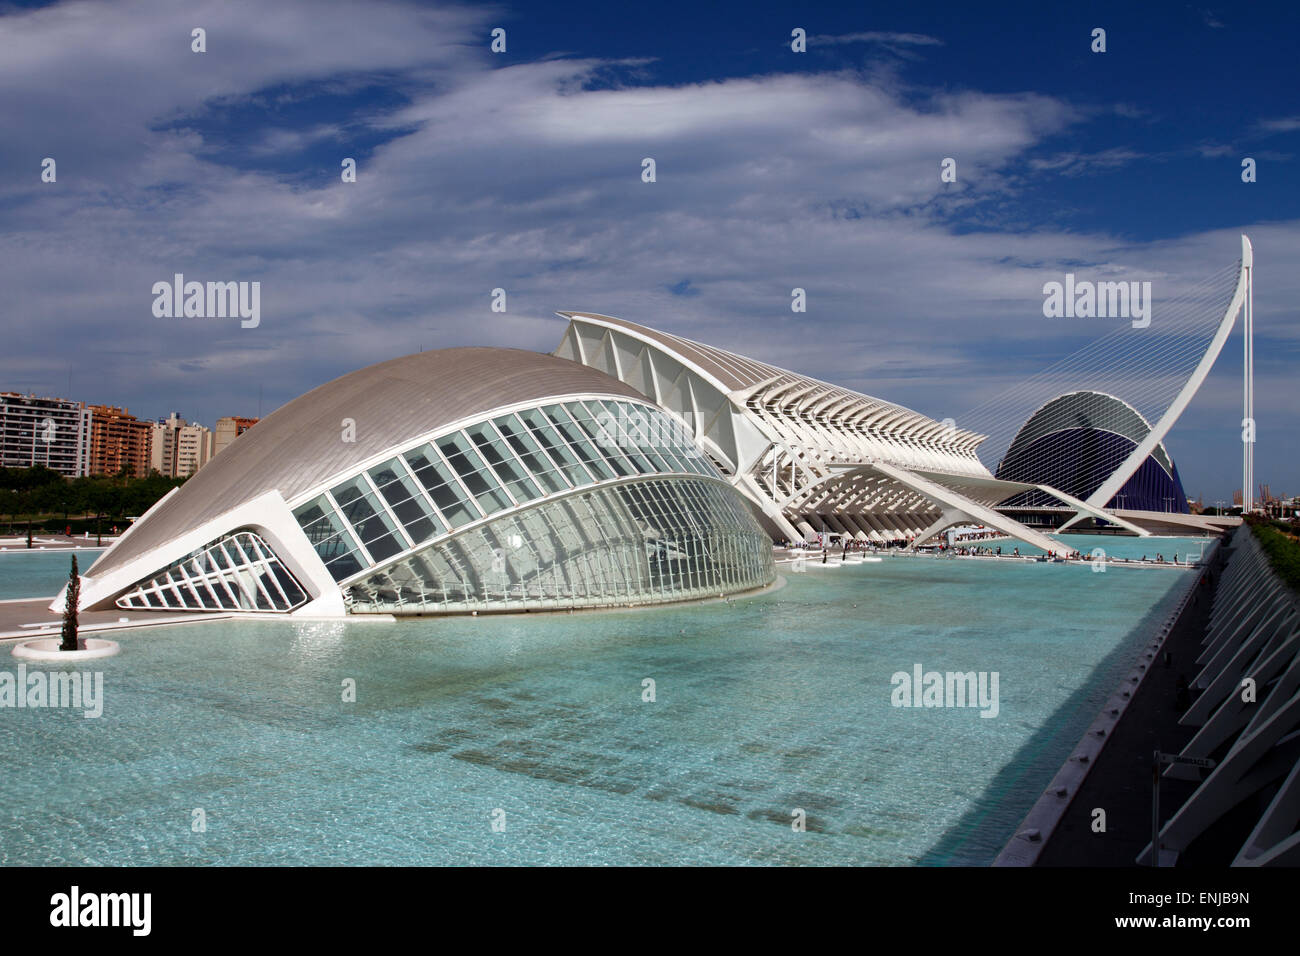 Details in Ciudad de las Artes y las Ciencias (City of Arts and Sciences), Valencia, Spain Stock Photo